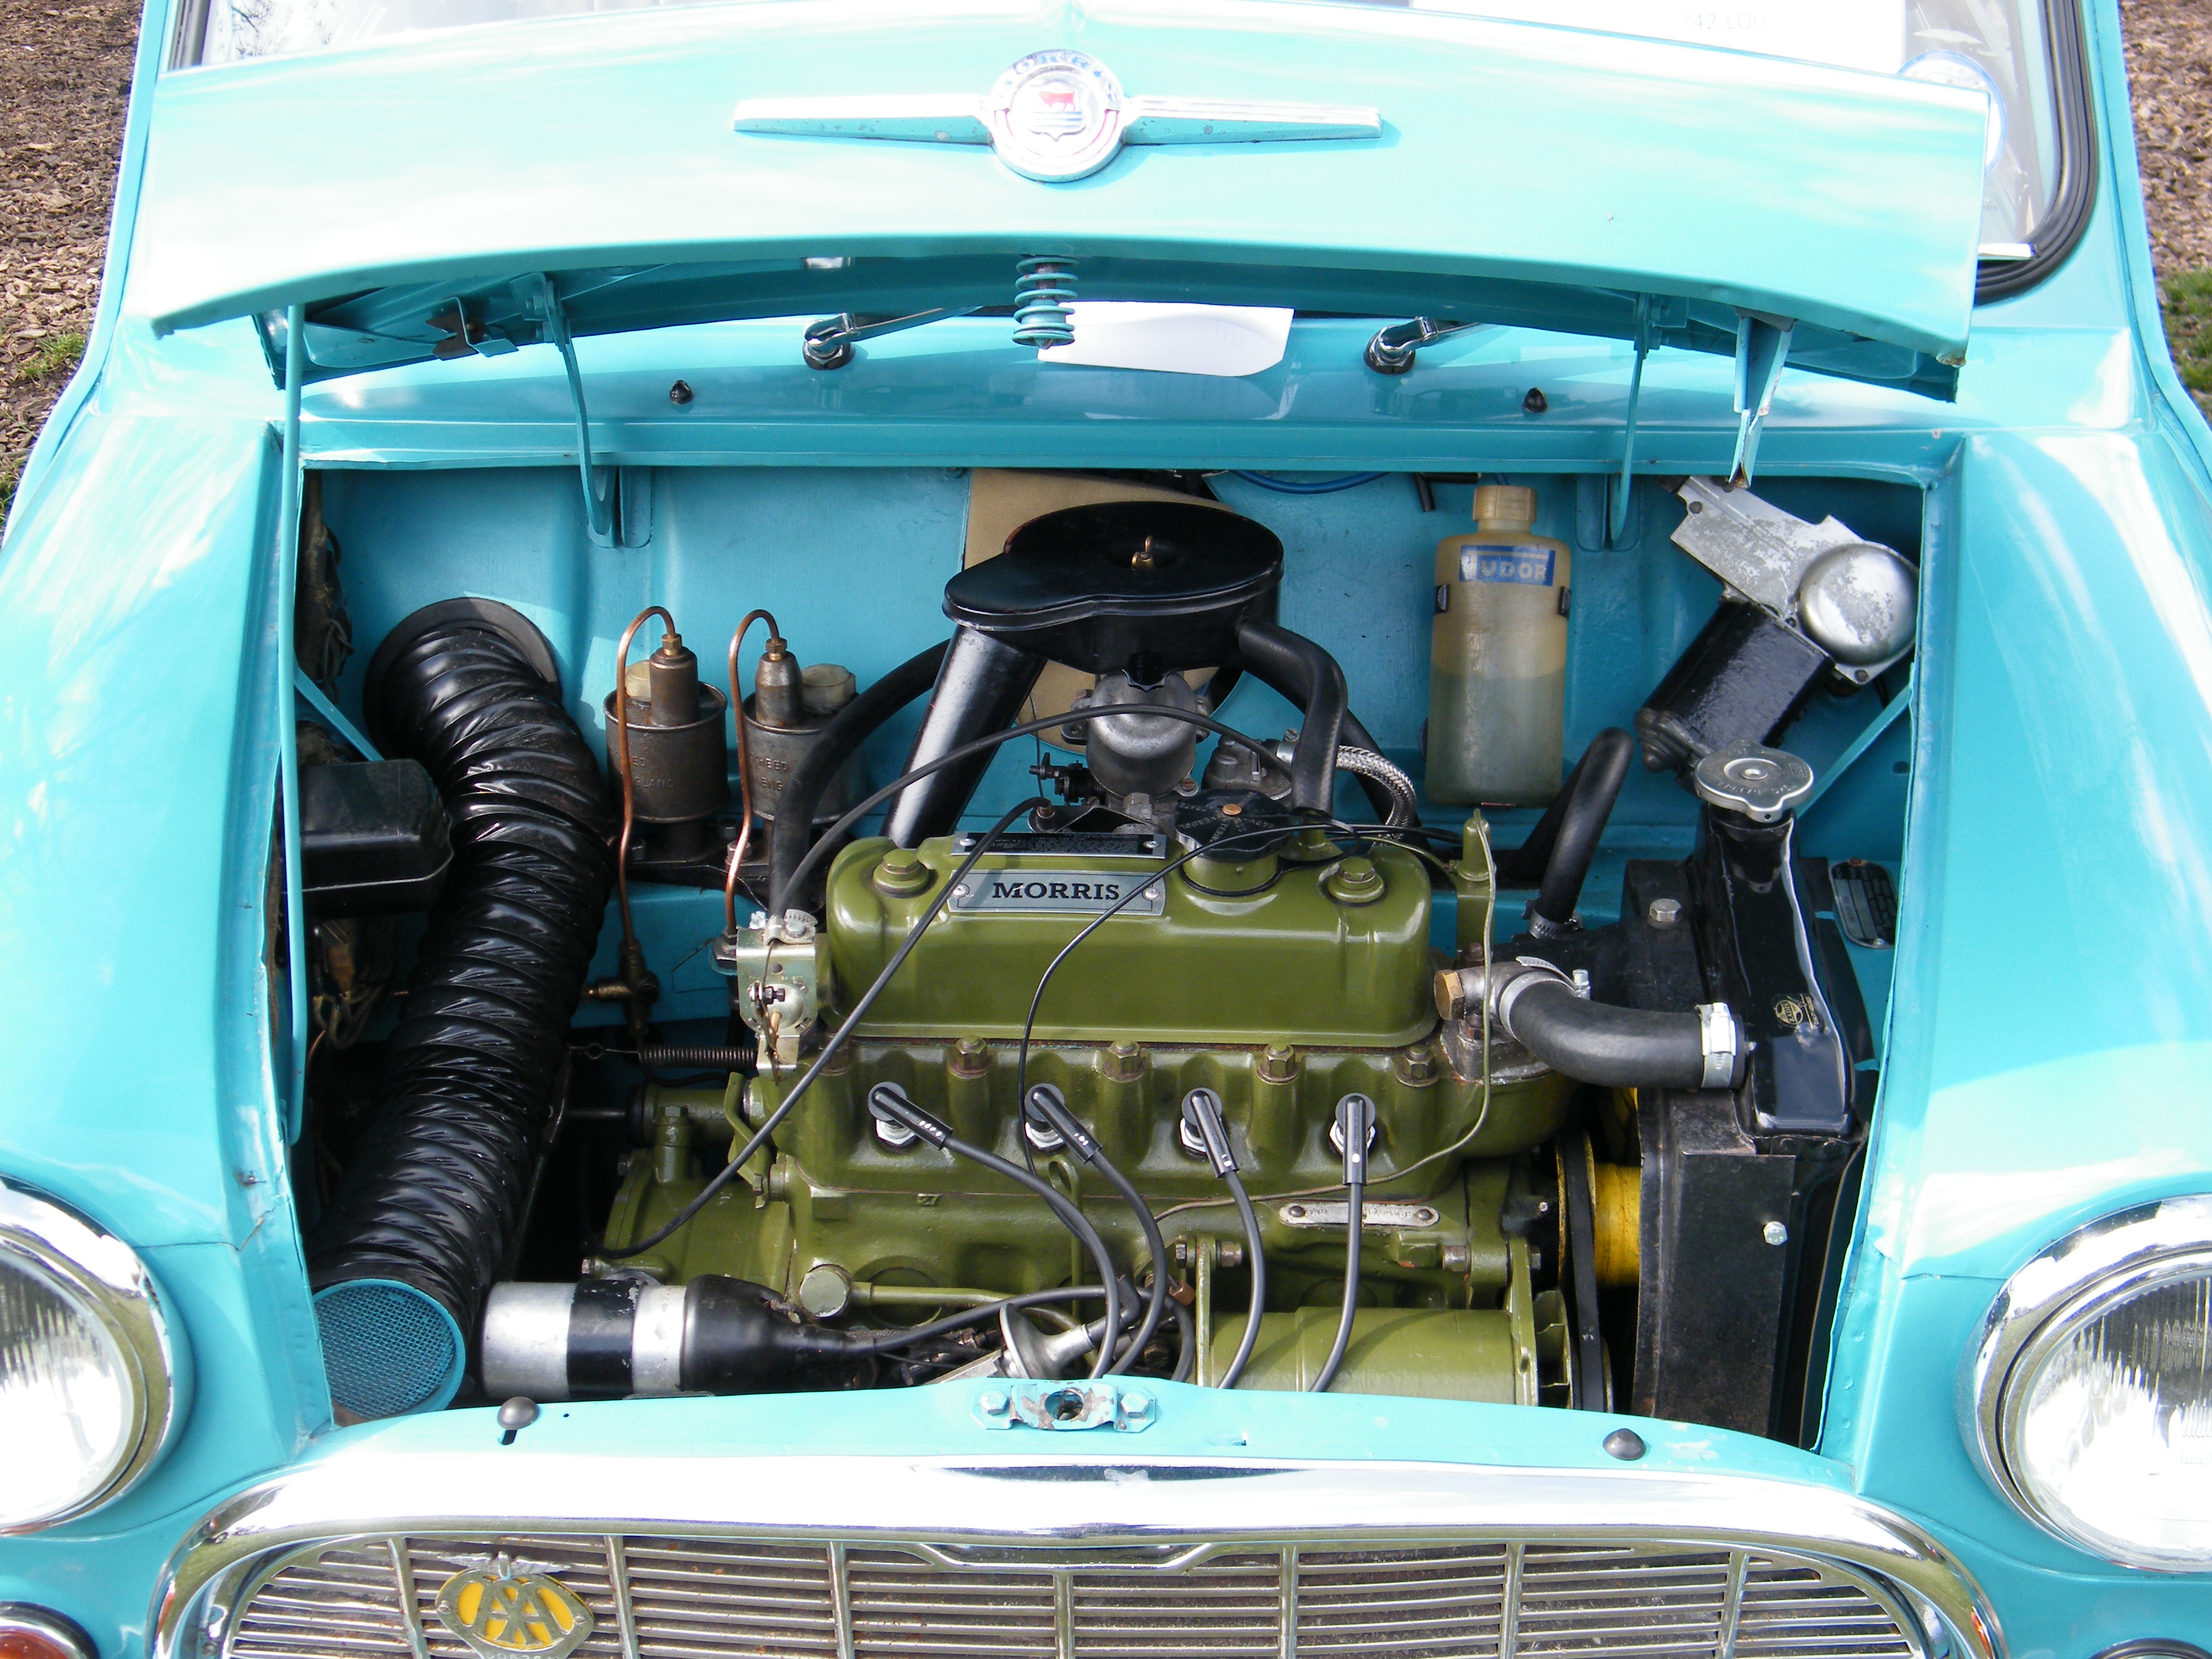 1964 Baie moteur de Morris Mini | Flickr - Partage de photos!